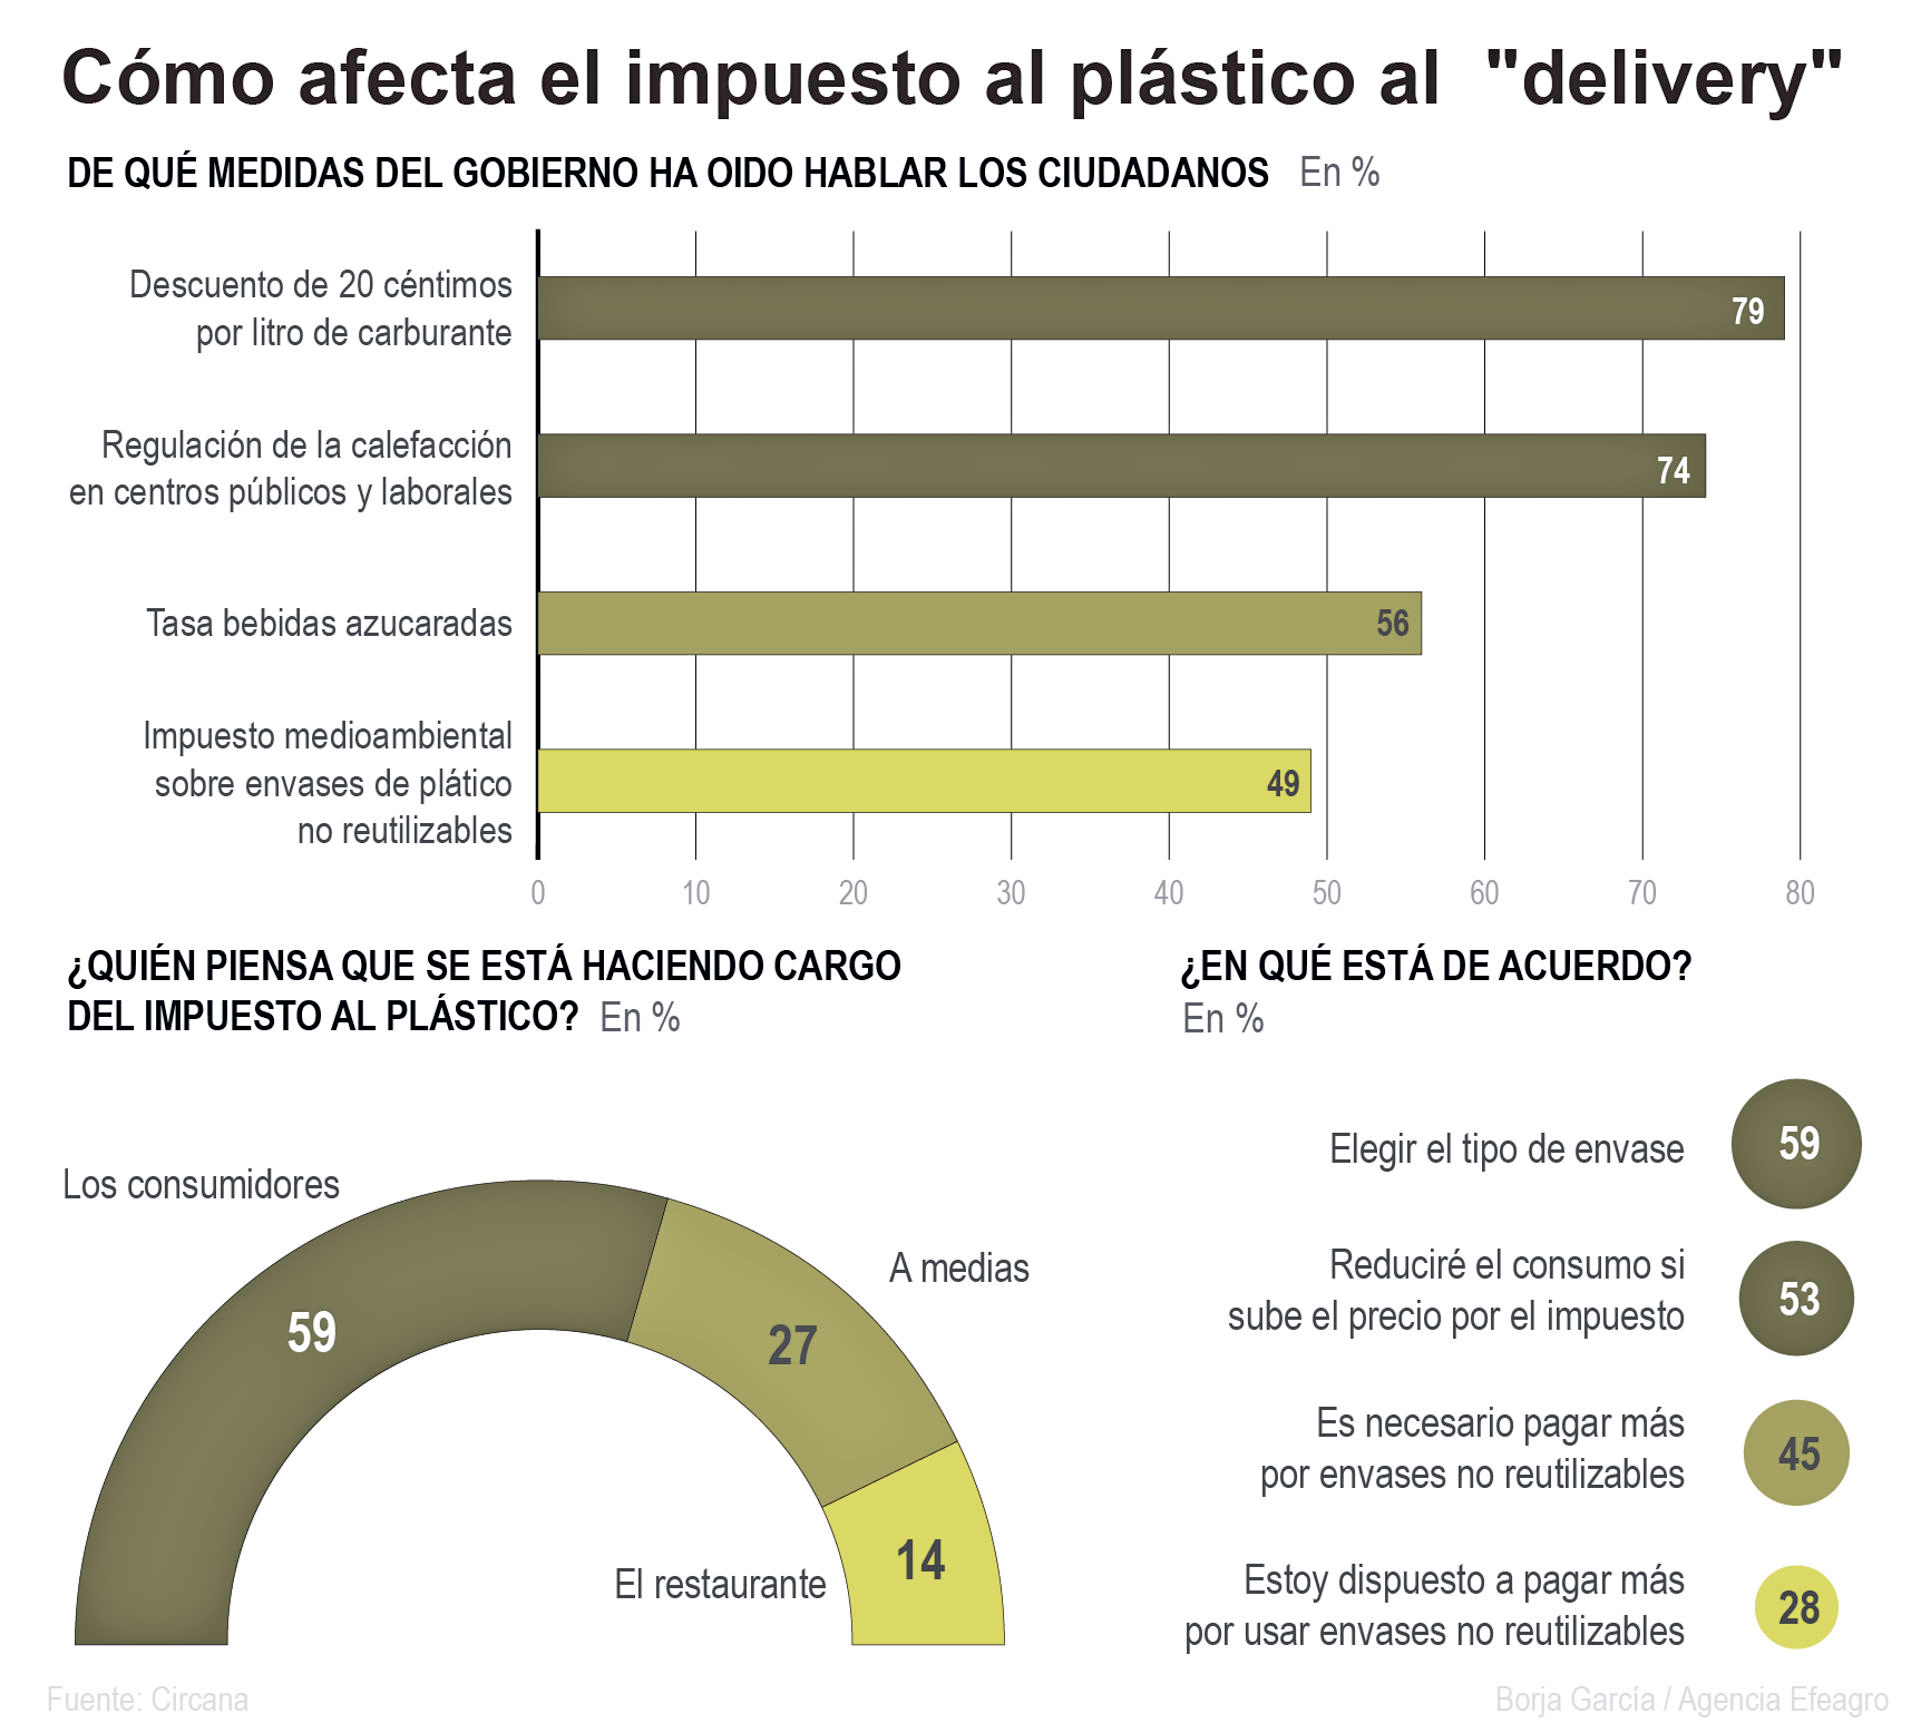 Infografía sobre cómo afecta el impuesto al plástico en el 'delivery'